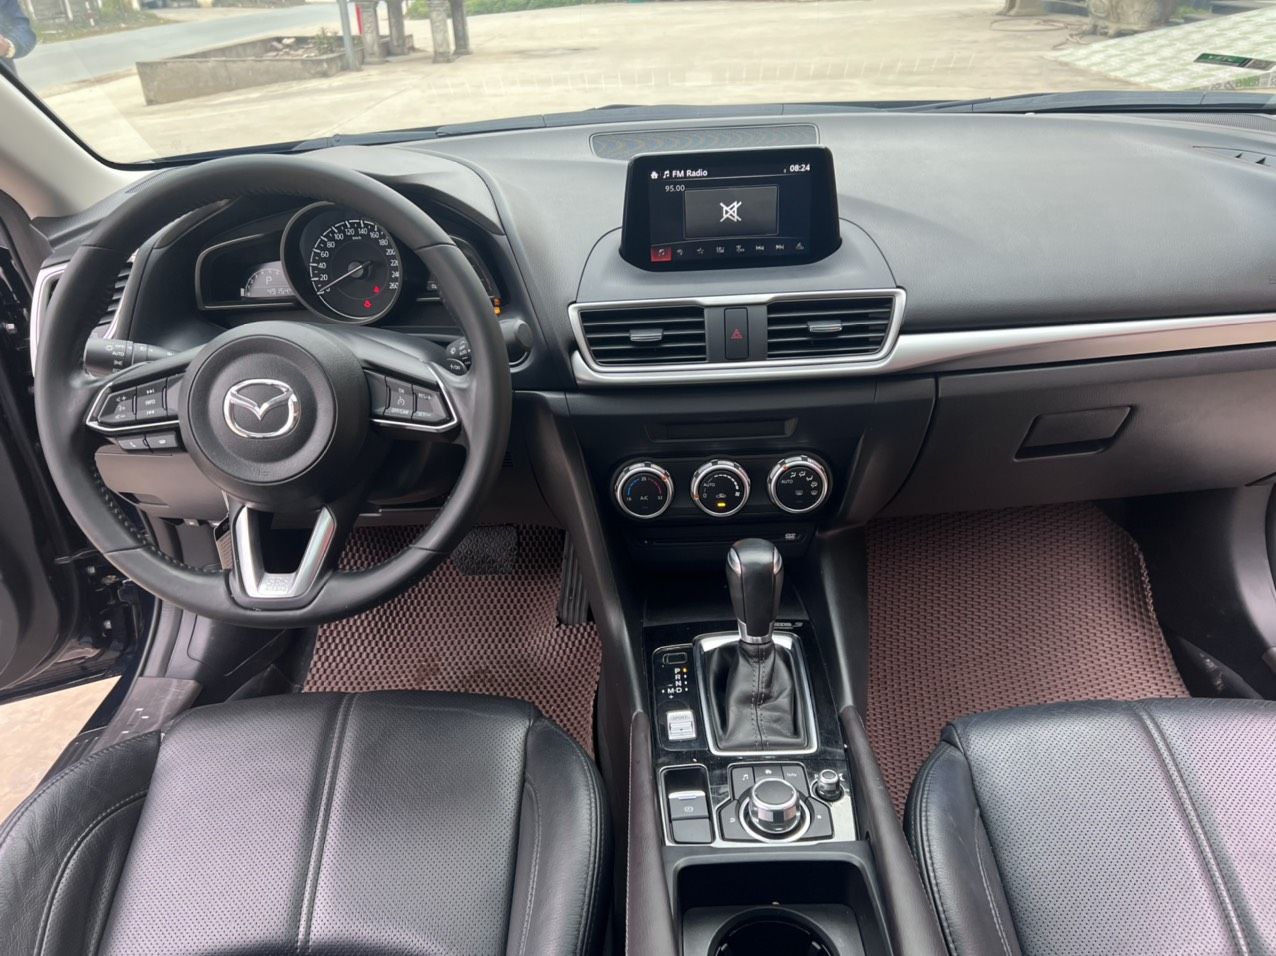 Mazda 3 2019 - 1 chủ từ đầu đẹp xuất sắc, full options